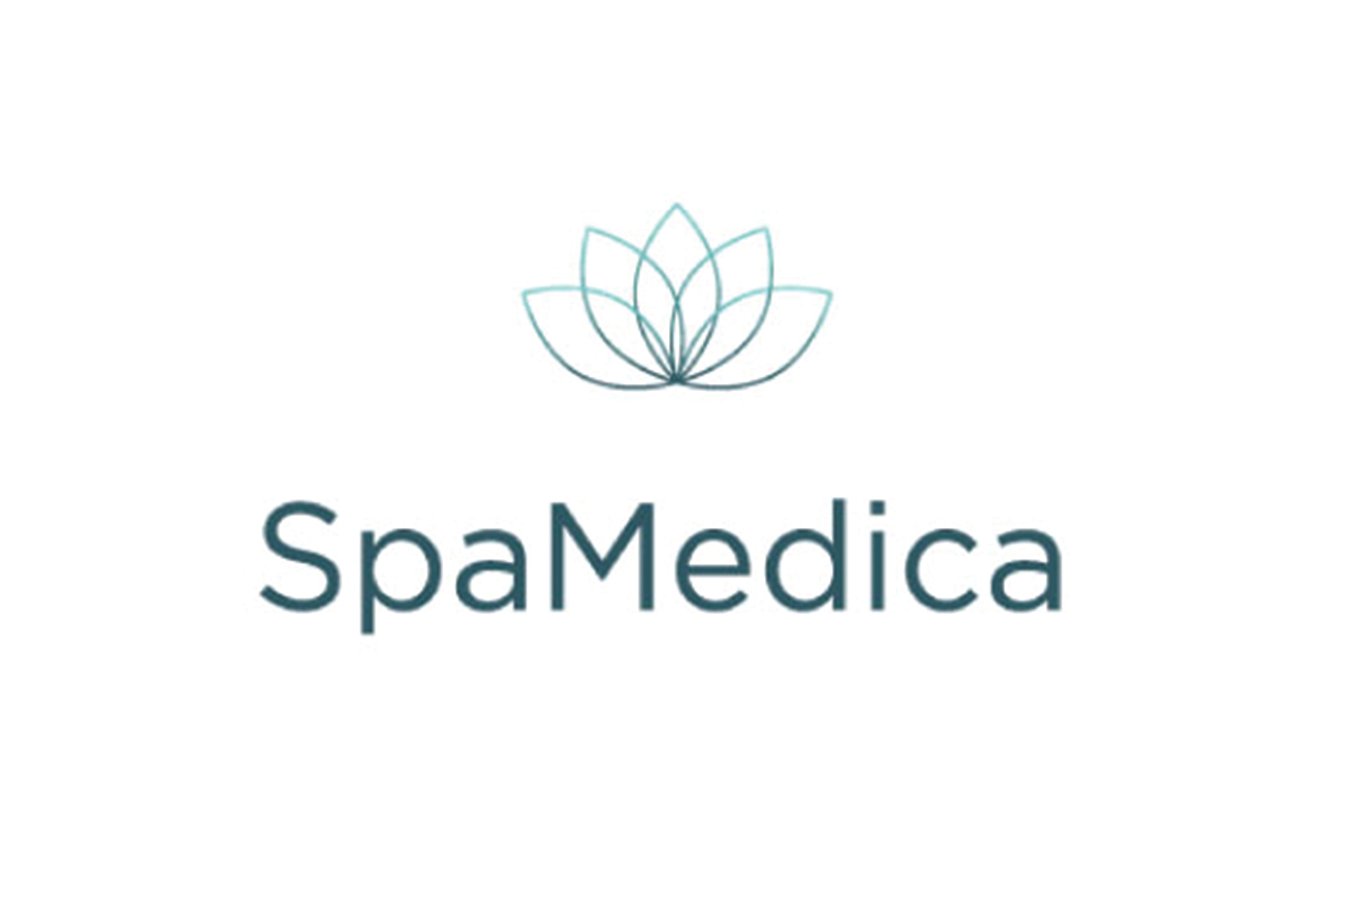 Spamedica Final - website